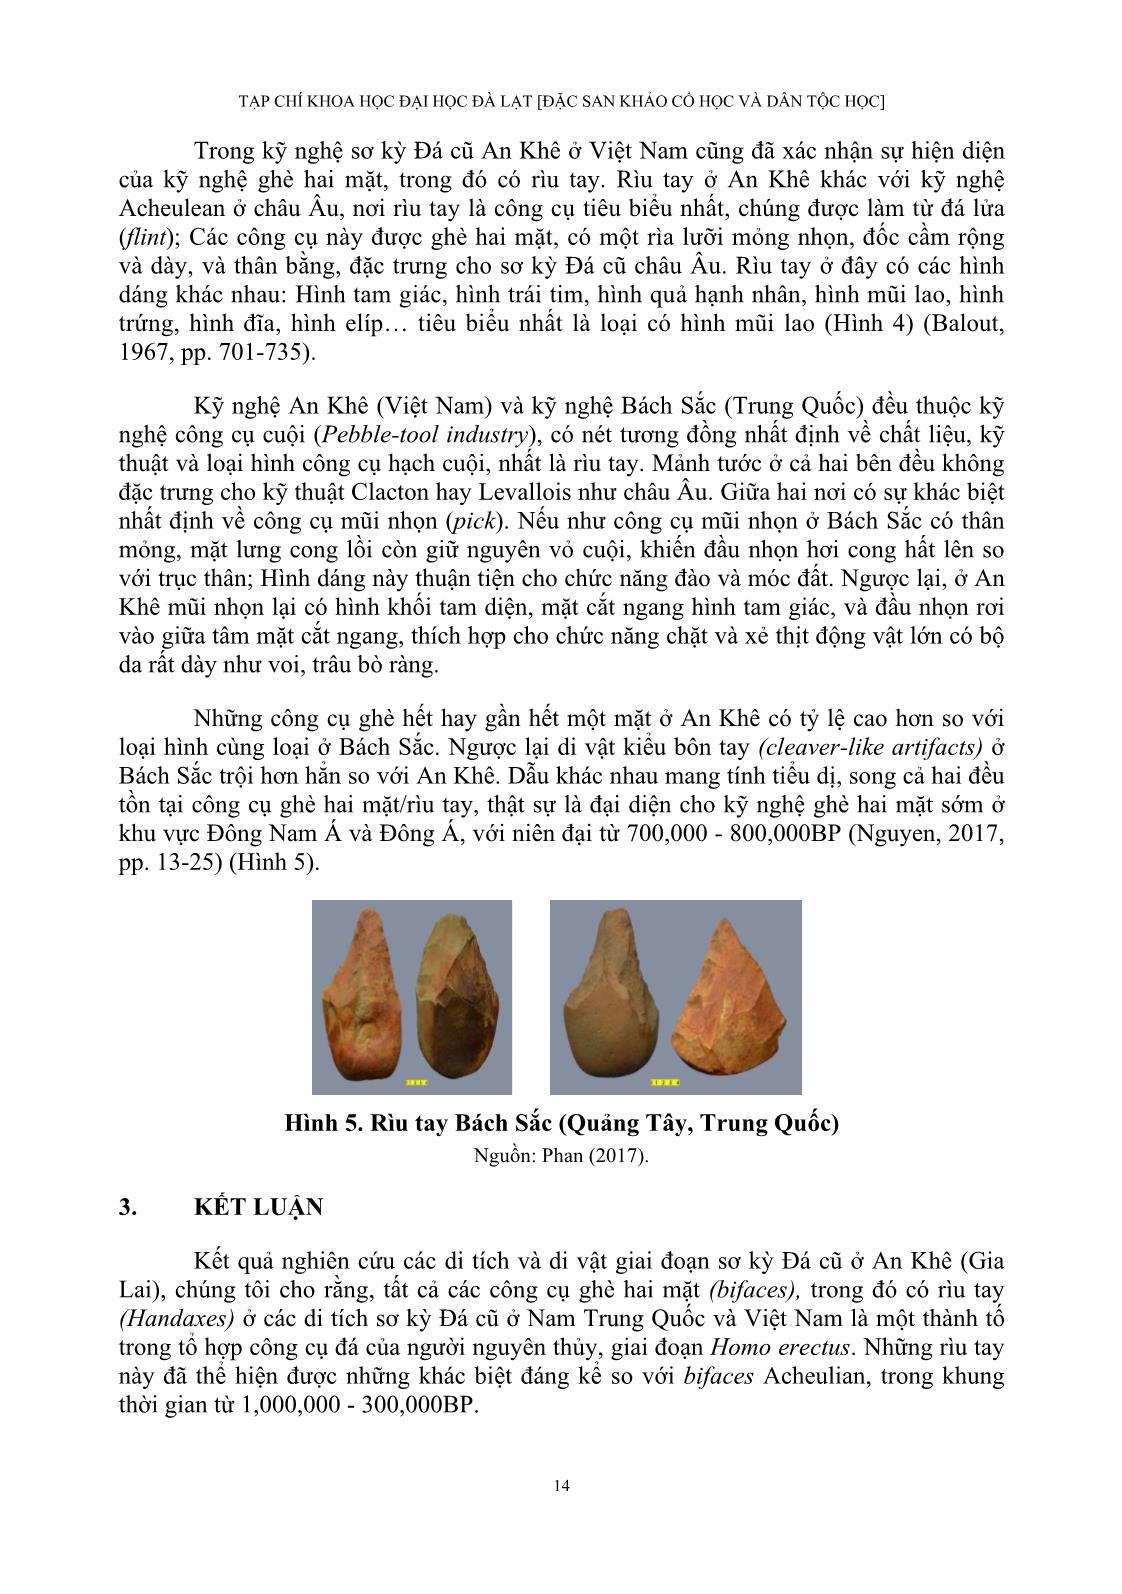 Kỹ nghệ sơ kỳ đá cũ An khê ở Việt Nam với cái gọi là con đường movius trang 8